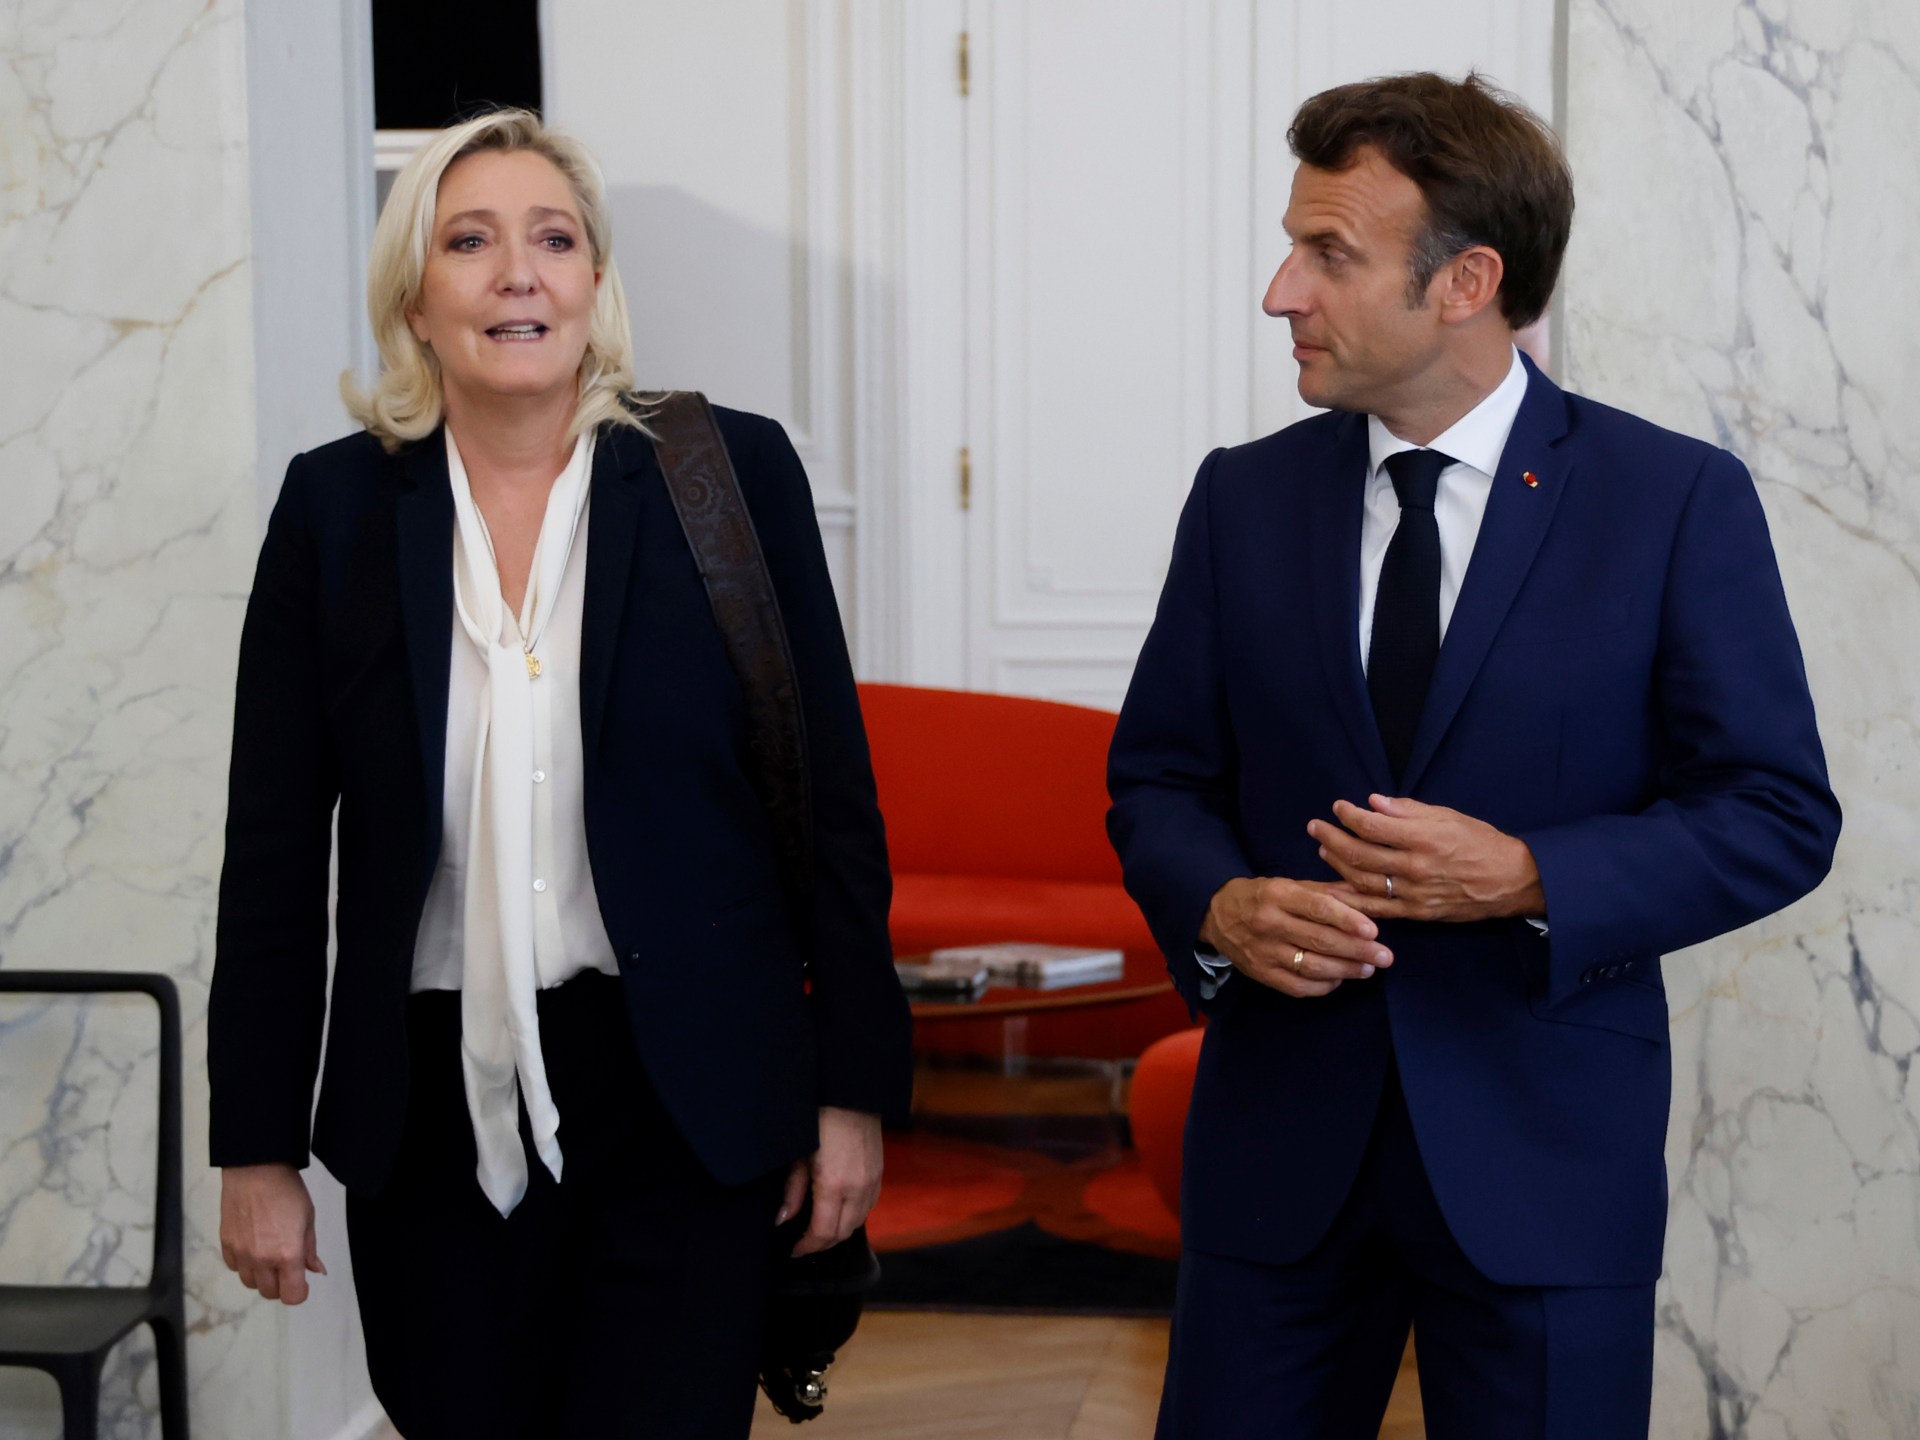 زعيمة اليمين المتطرف في فرنسا لوبان تشكك في دور ماكرون كقائد للجيش | أخبار السياسة